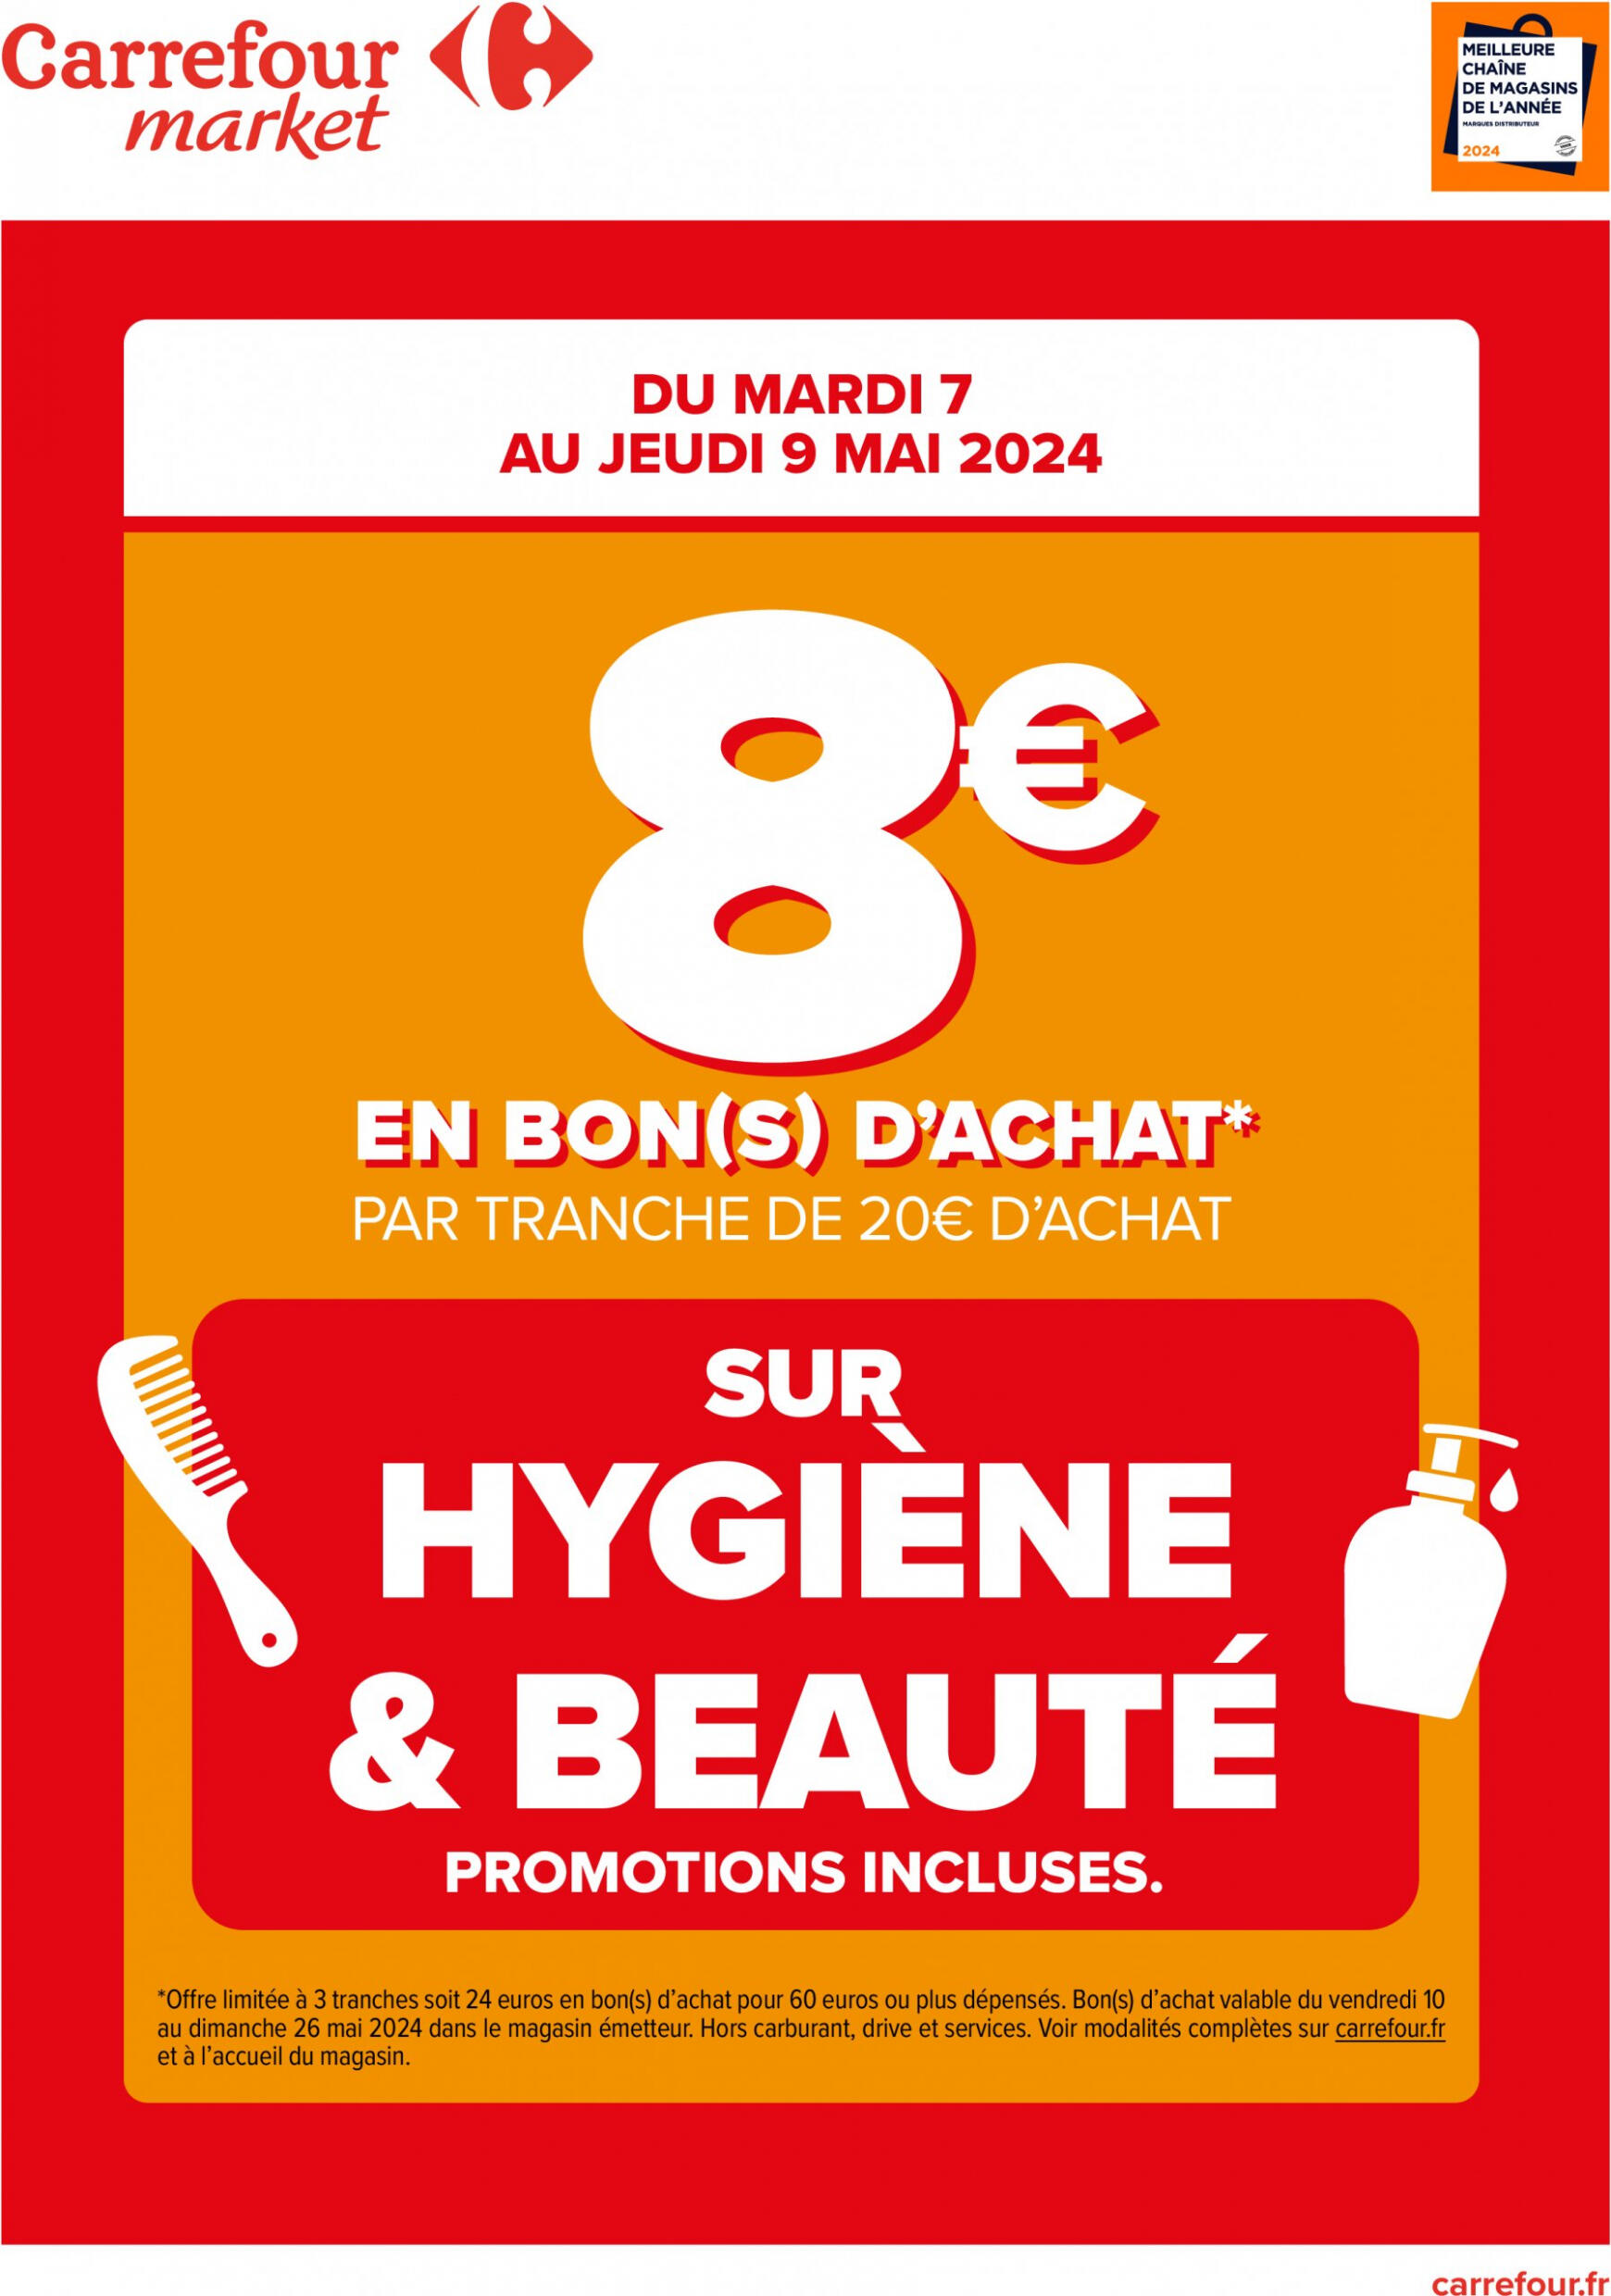 carrefour-market - Prospectus Carrefour Market - 8€ en bon d'achat sur hygiène&beauté actuel 07.05. - 09.05.